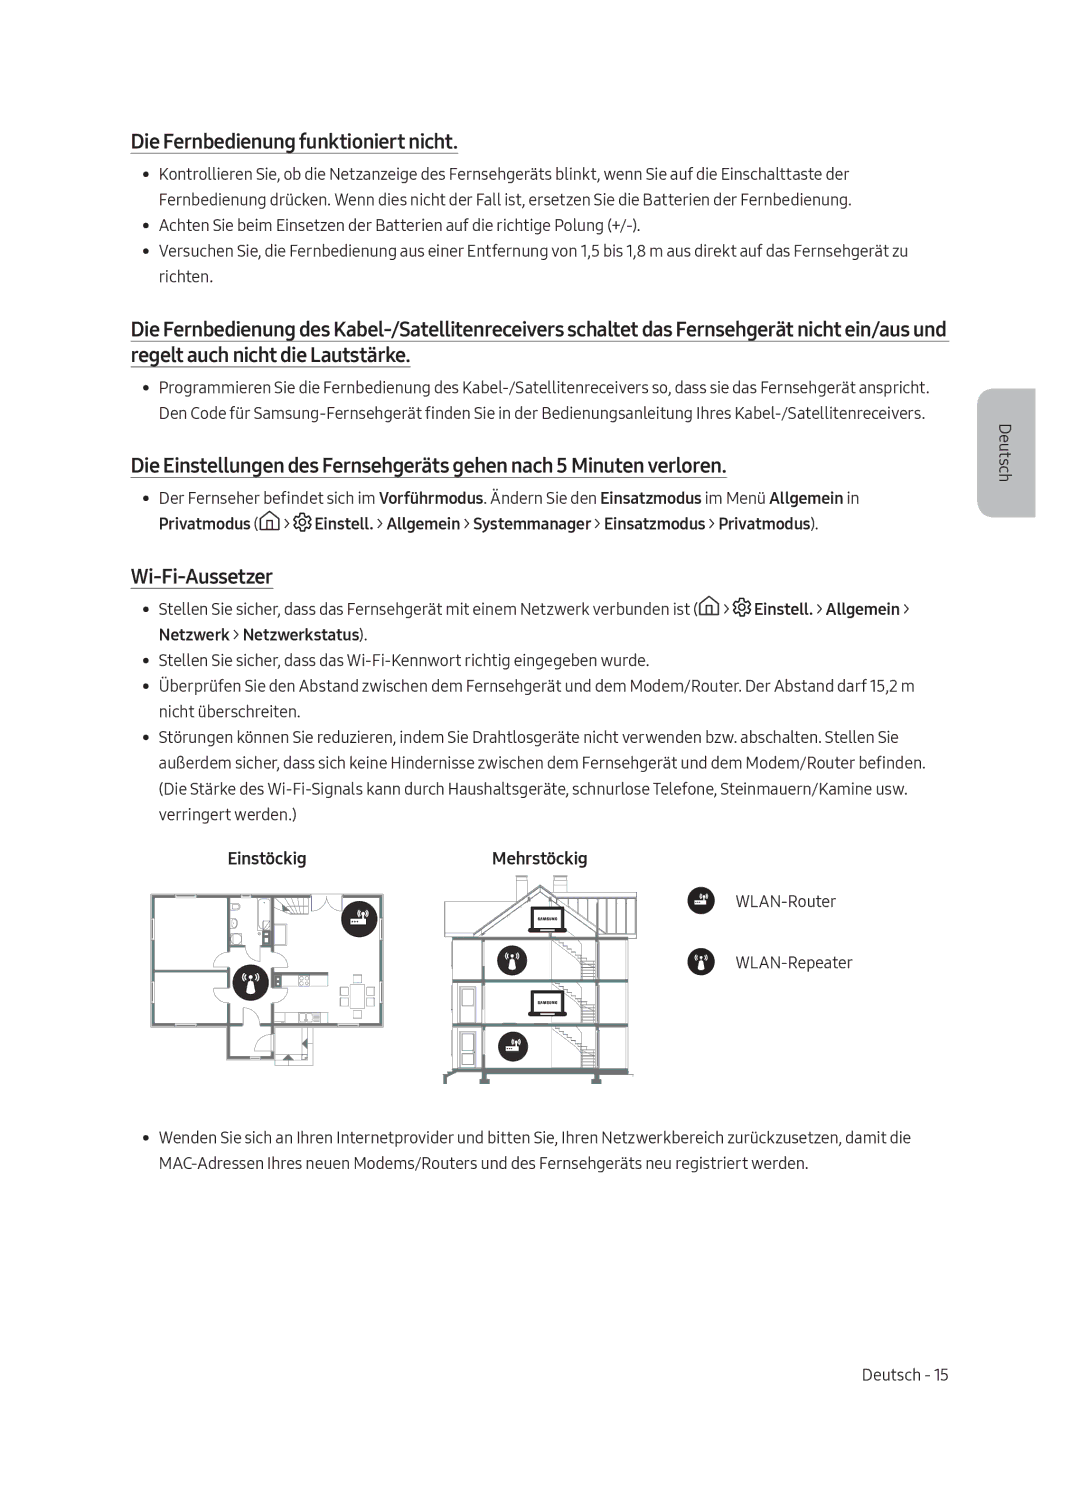 Samsung UE55MU6220WXXN manual Die Fernbedienung funktioniert nicht, Wi-Fi-Aussetzer, EinstöckigMehrstöckig 